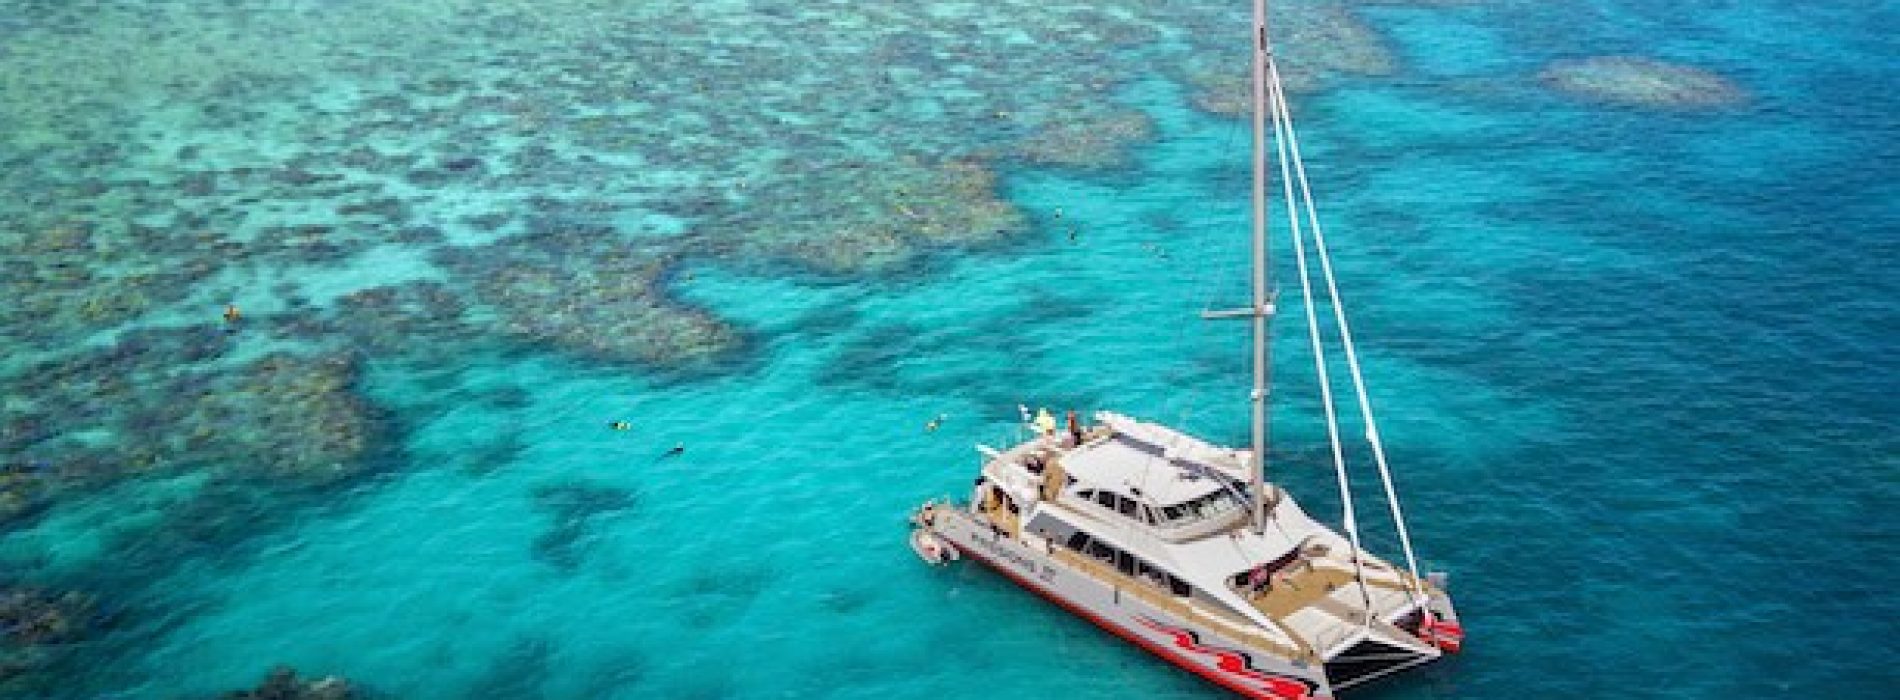 Zonder toeristen plant Australian Scuba Tours in plaats daarvan koraal